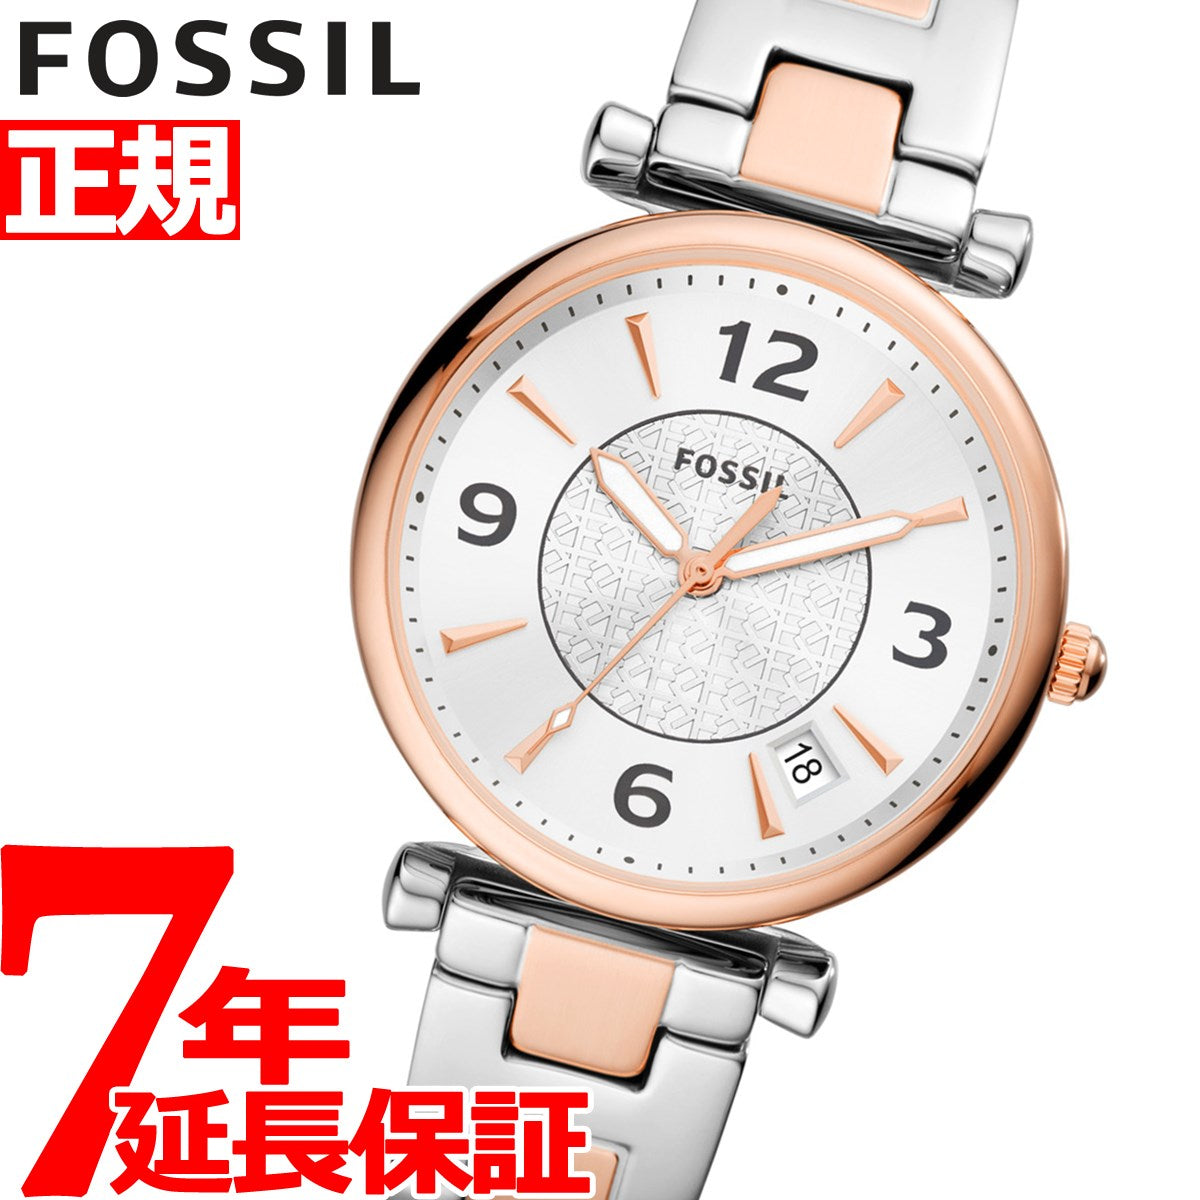 ROSE GOLD - FOSSIL 腕時計 - nstt.fr